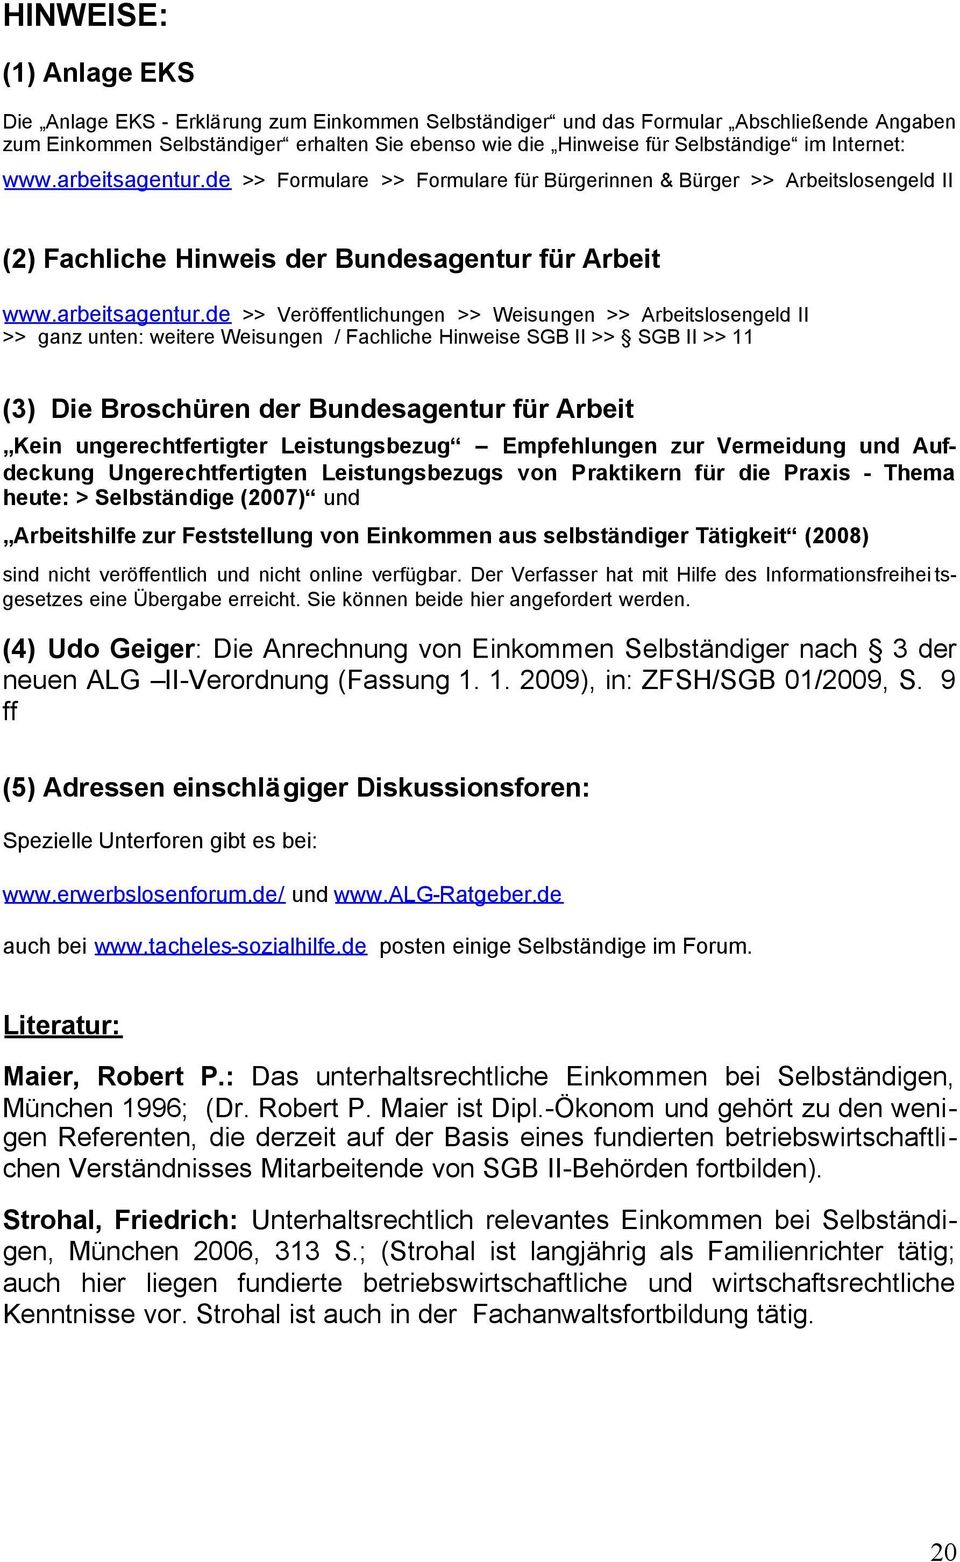 de >> Formulare >> Formulare für Bürgerinnen & Bürger >> Arbeitslosengeld II (2) Fachliche Hinweis der Bundesagentur für Arbeit www.arbeitsagentur.